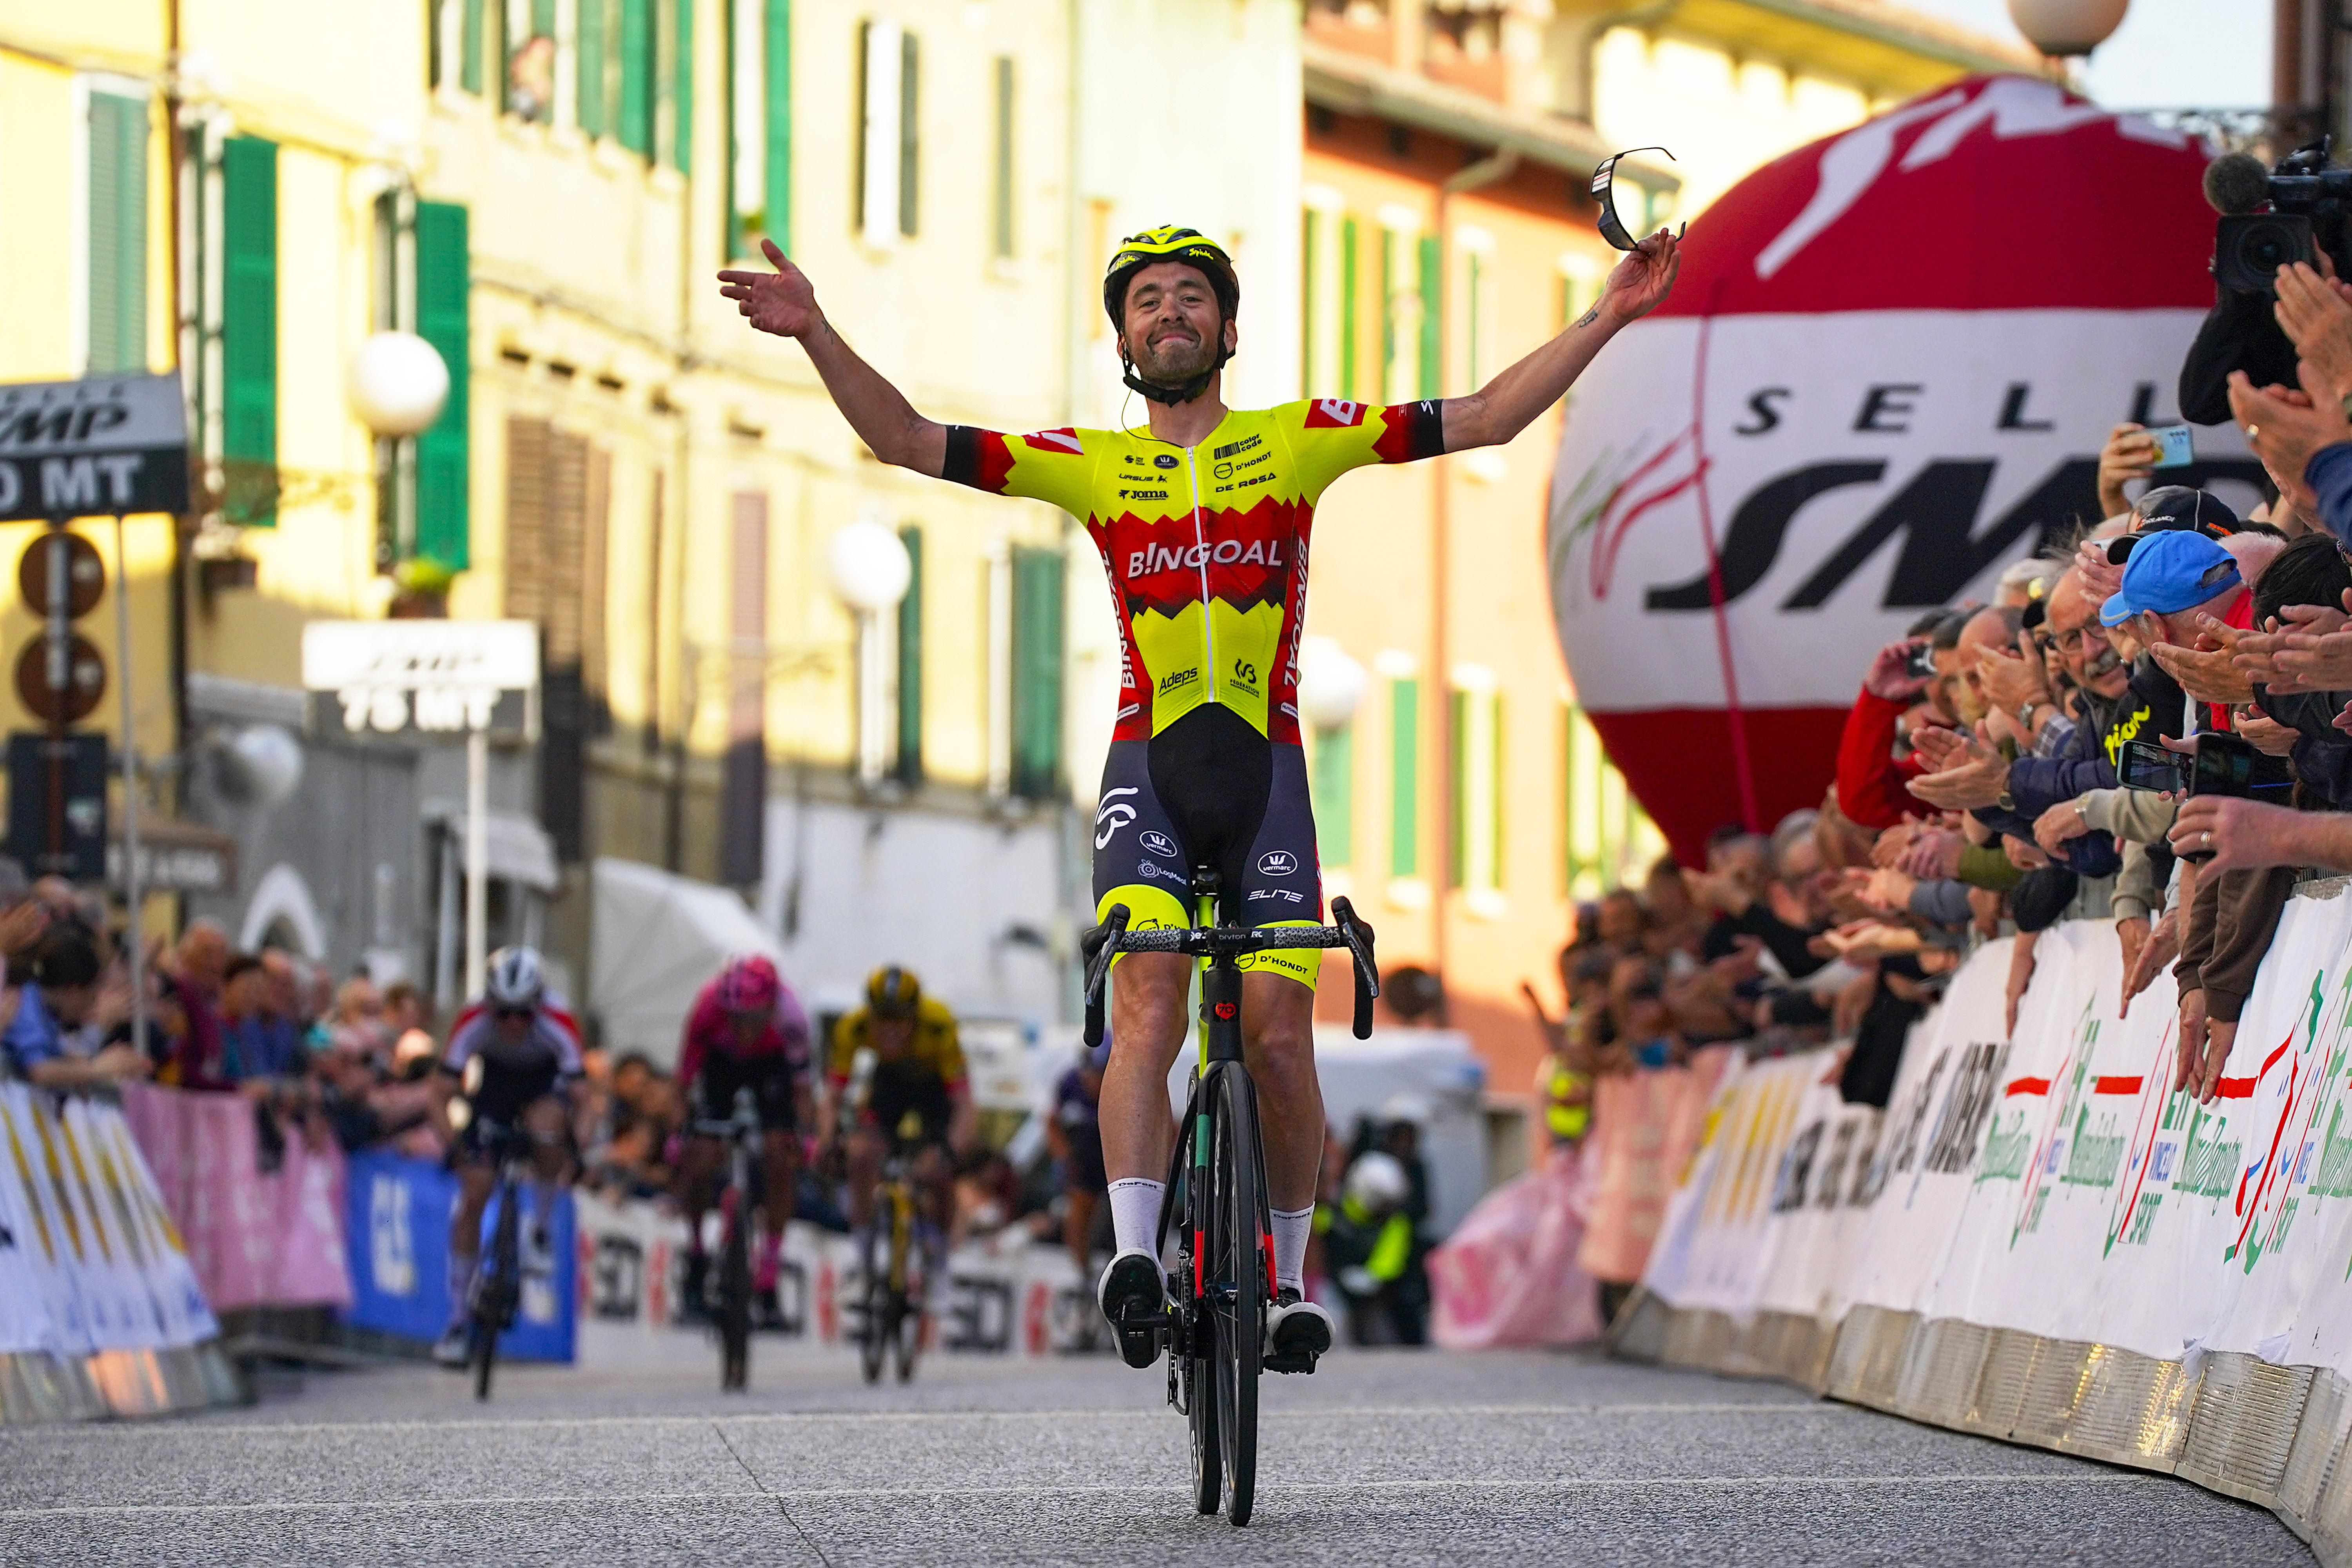 Coppi e Bartali: Alexis Guérin takes solo victory on stage 4